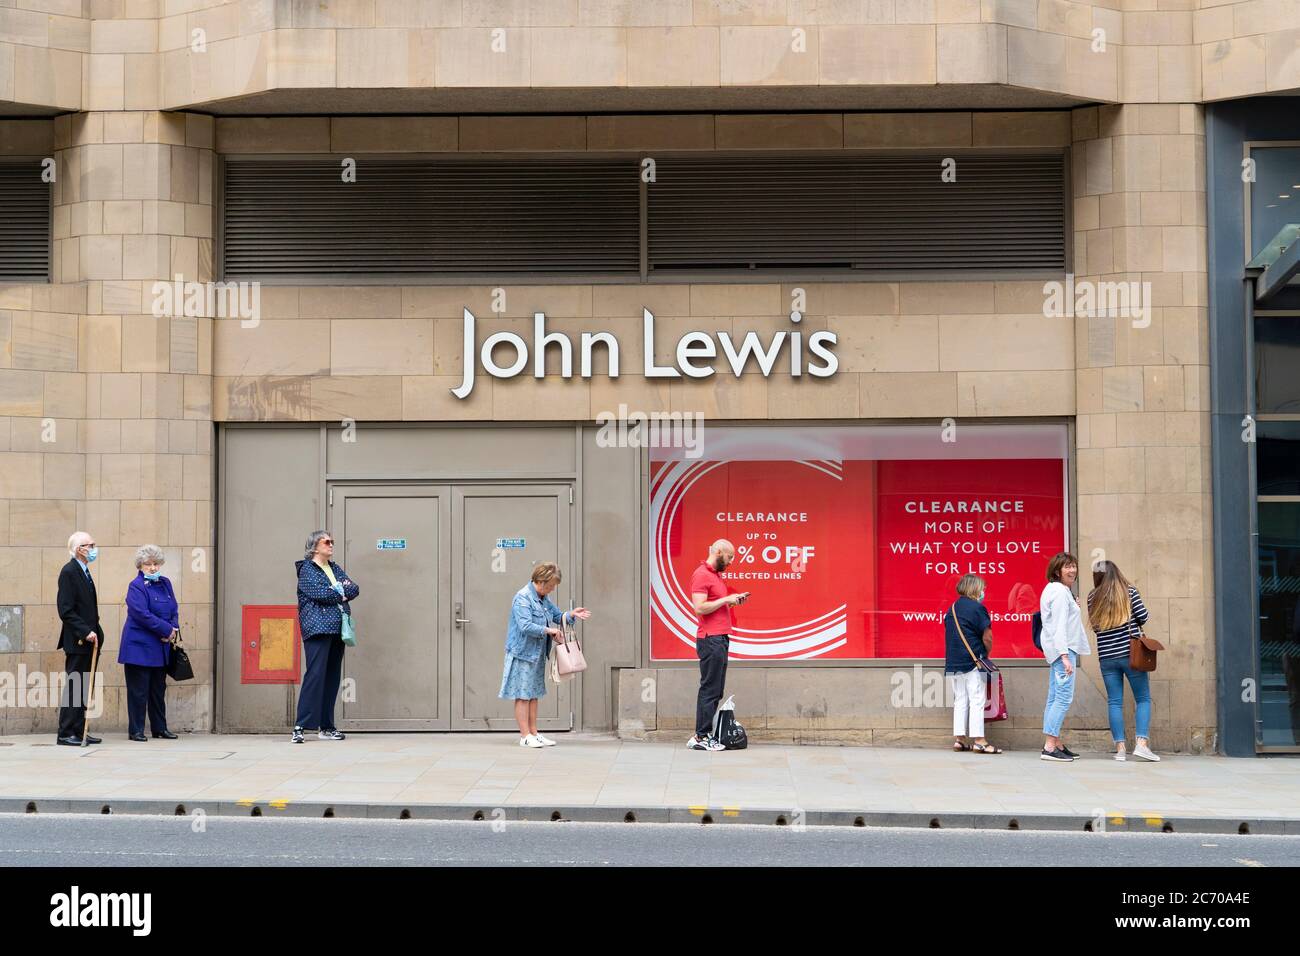 Edinburgh, Schottland, Großbritannien. Am 13. Juli 2020 wurde in Schottland nach einer weiteren Lockerung der Coronavirus-Sperre die Wiedereröffnung von Einkaufszentren durchgeführt. Das Kaufhaus John Lewis & Partners öffnete früh um 9.30 Uhr, nachdem sich draußen eine lange Schlange gebildet hatte. Iain Masterton/Alamy Live News Stockfoto